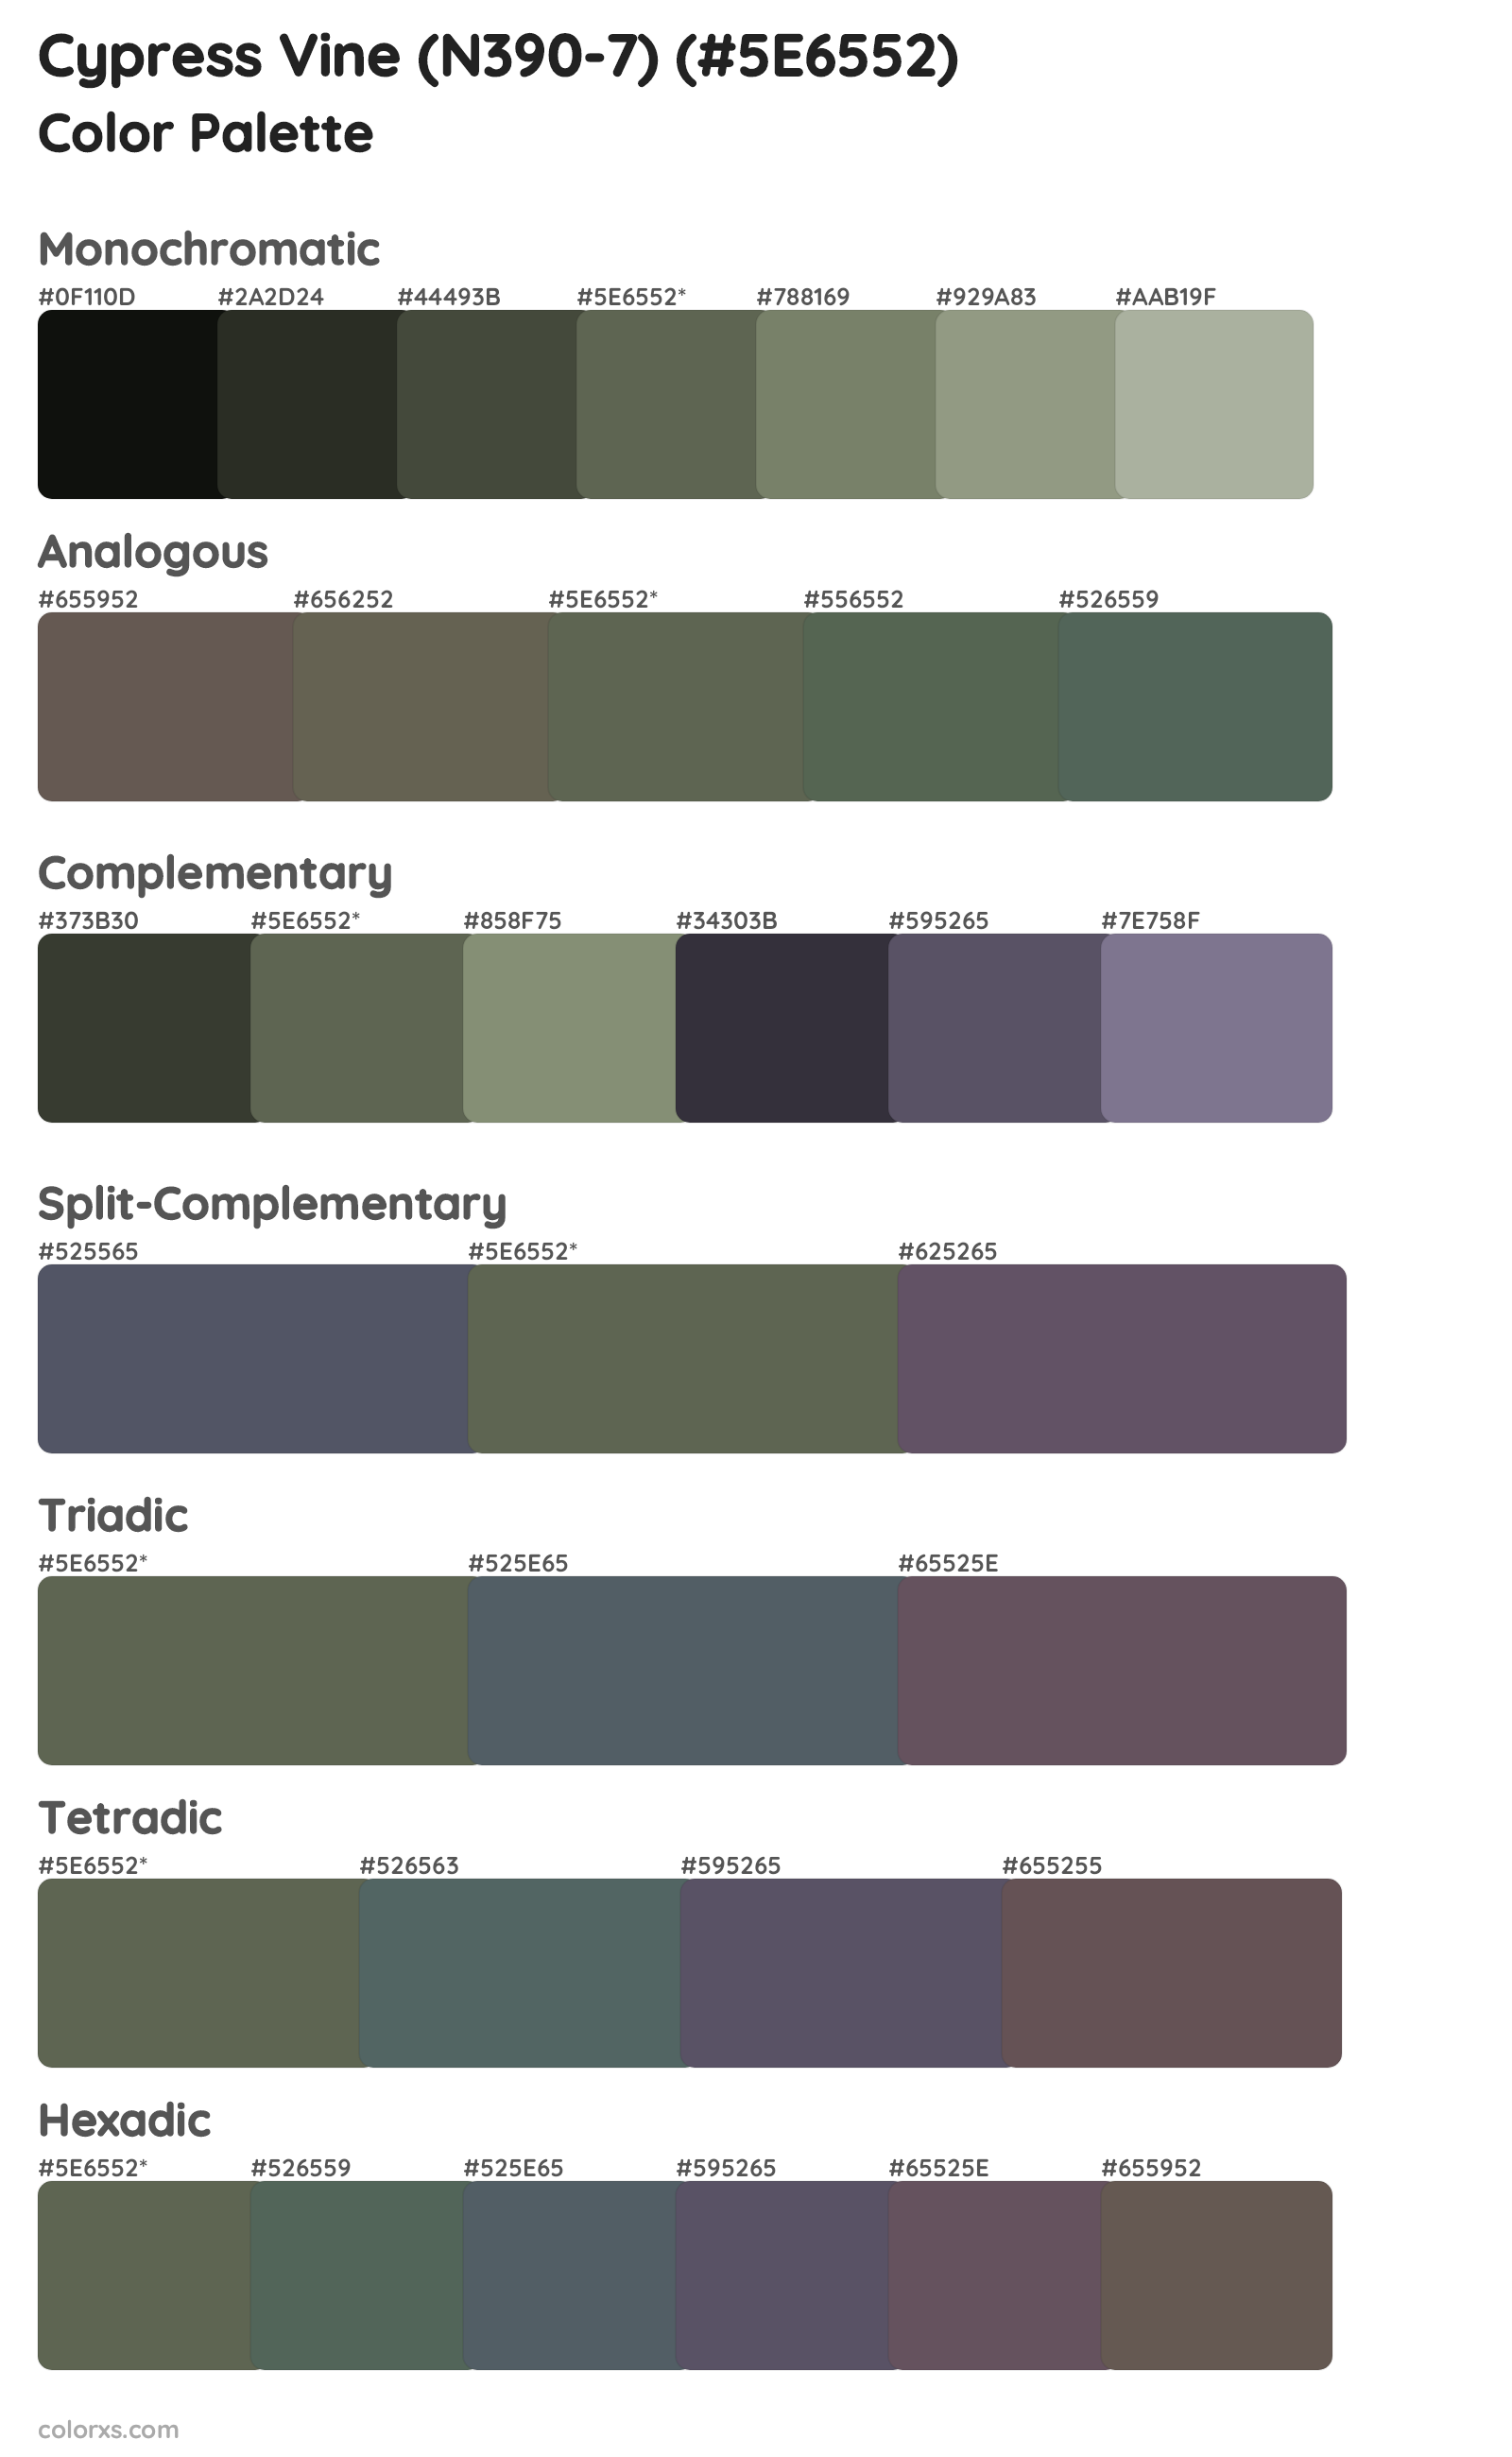 Cypress Vine (N390-7) Color Scheme Palettes